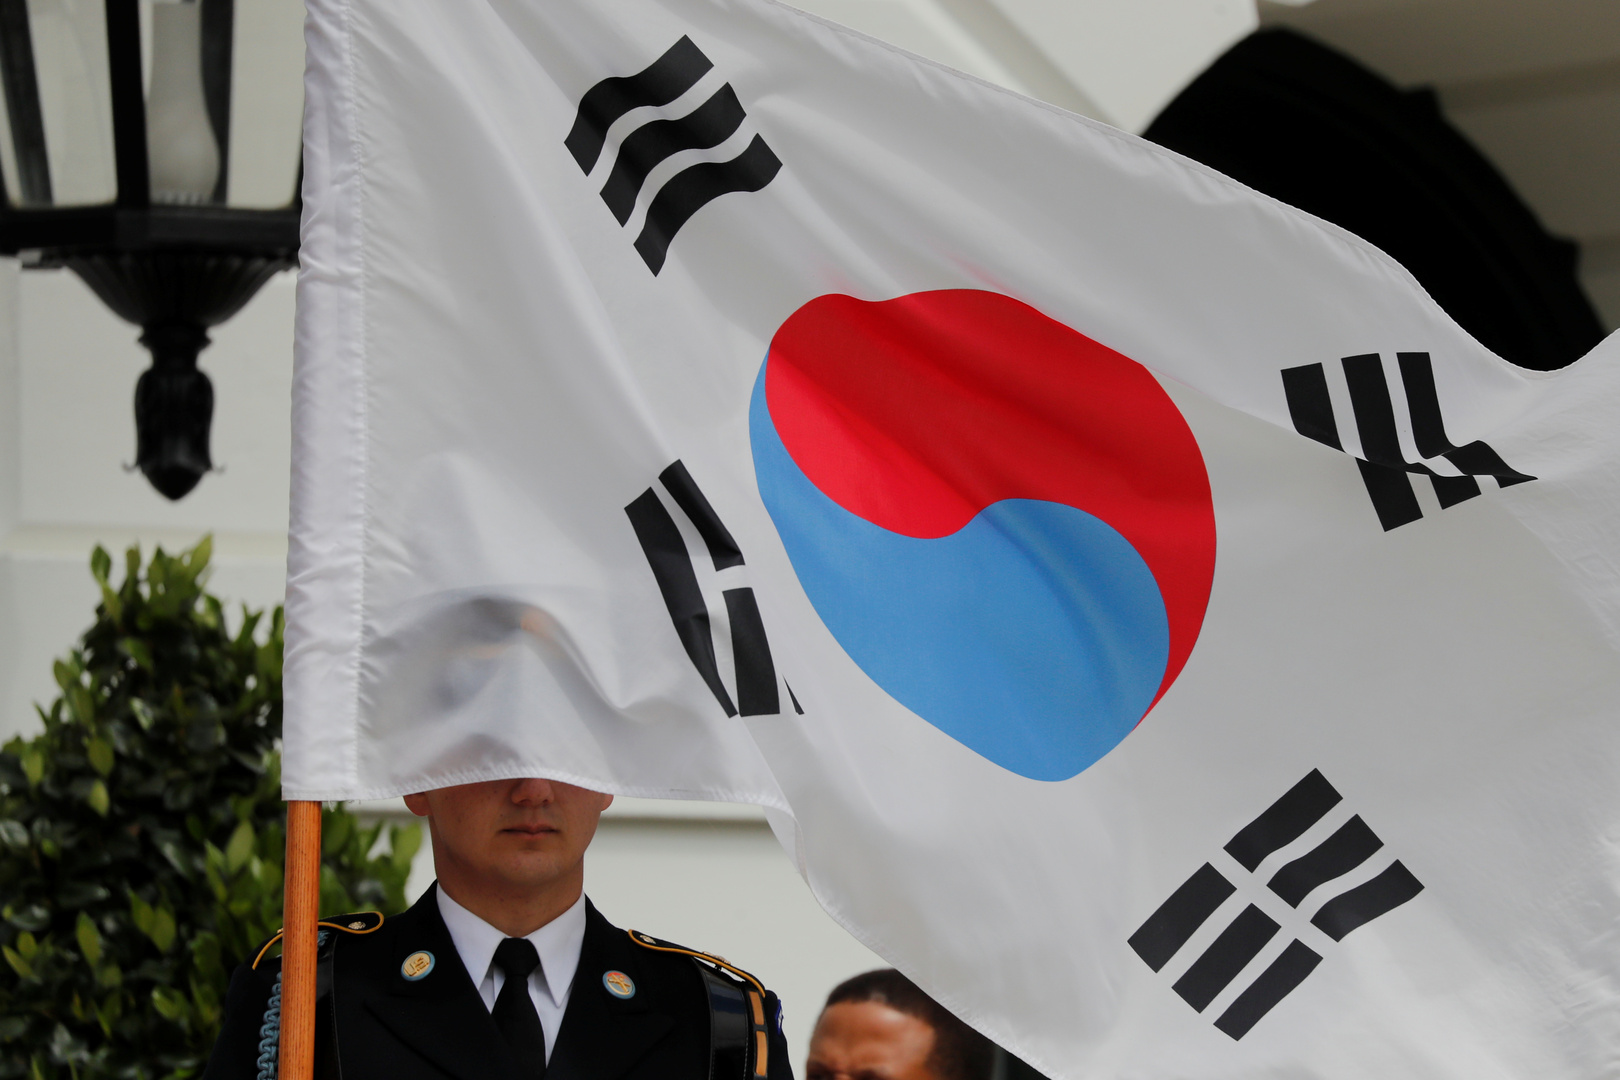 كوريا الجنوبية تجتاز بنجاح اختبار إطلاق لصاروخ موجه محلي الصنع (صورة)